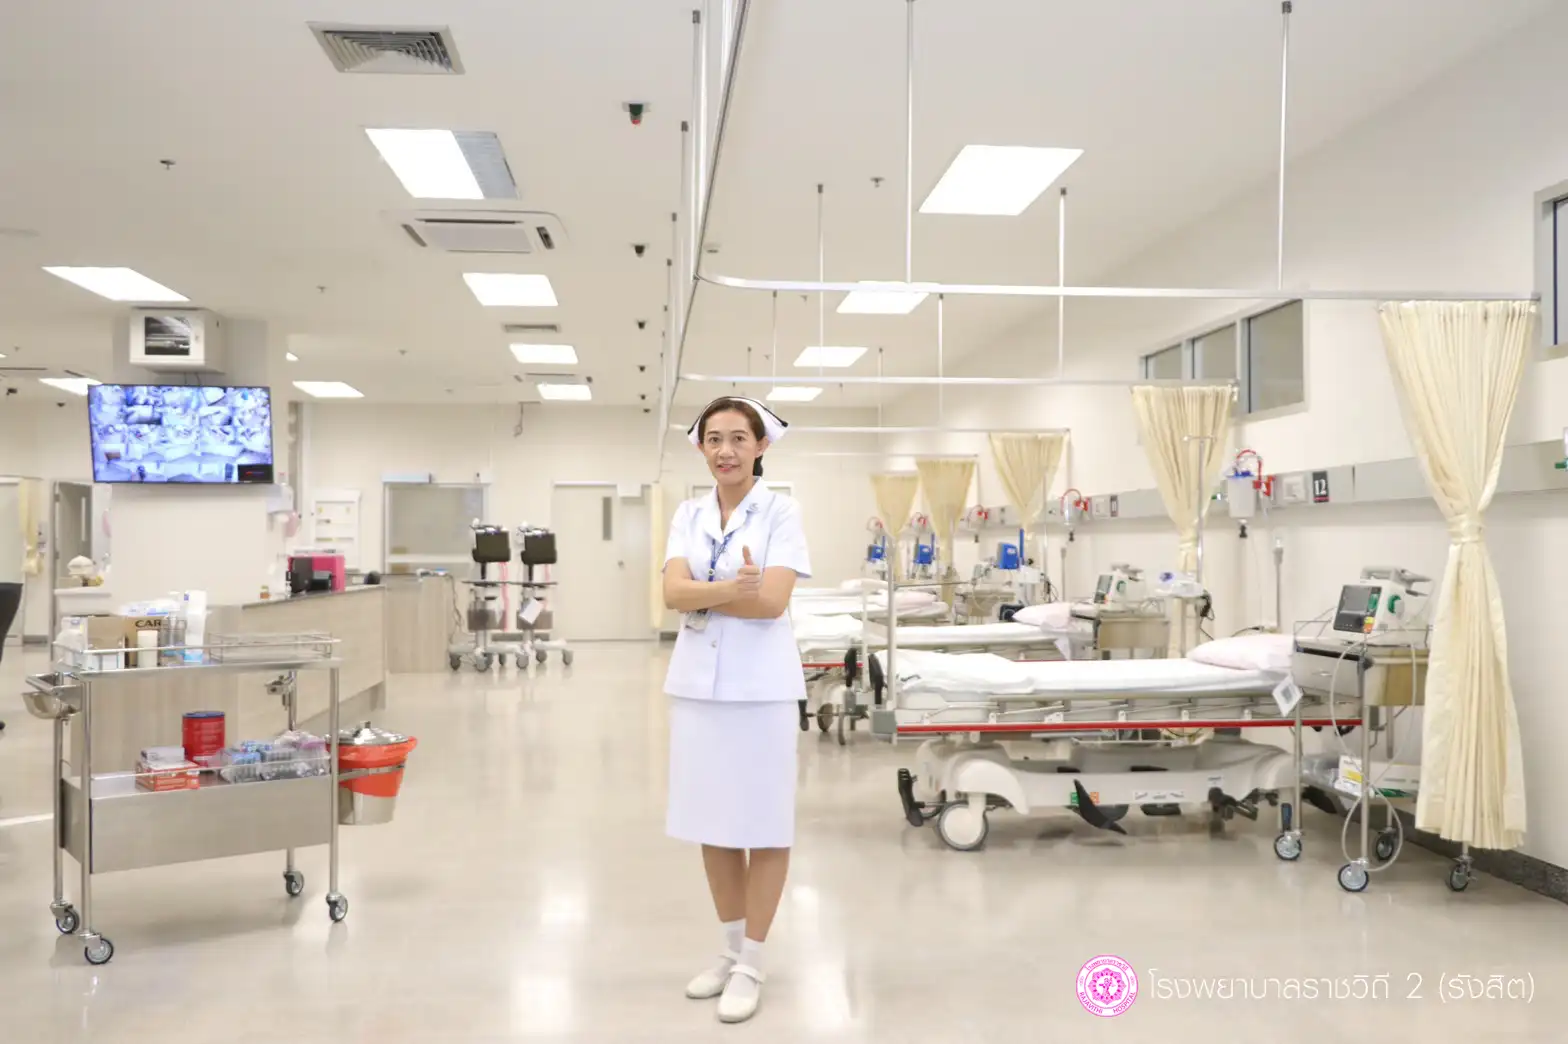 โรงพยาบาลราชวิถี 2 (รังสิต) พร้อมให้บริการ แผนกฉุกเฉิน 24 ชม. เป็นวันแรก HealthServ